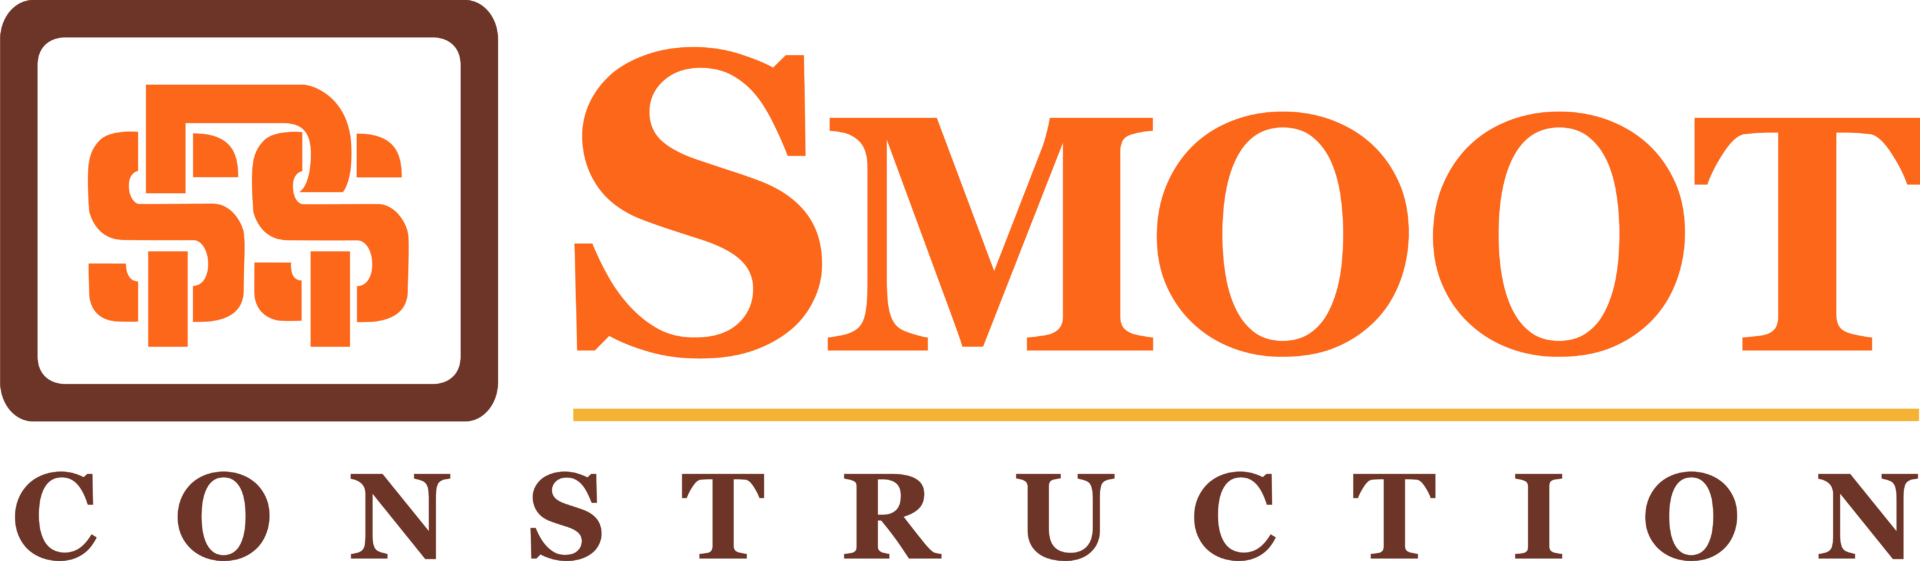 Smoot logo